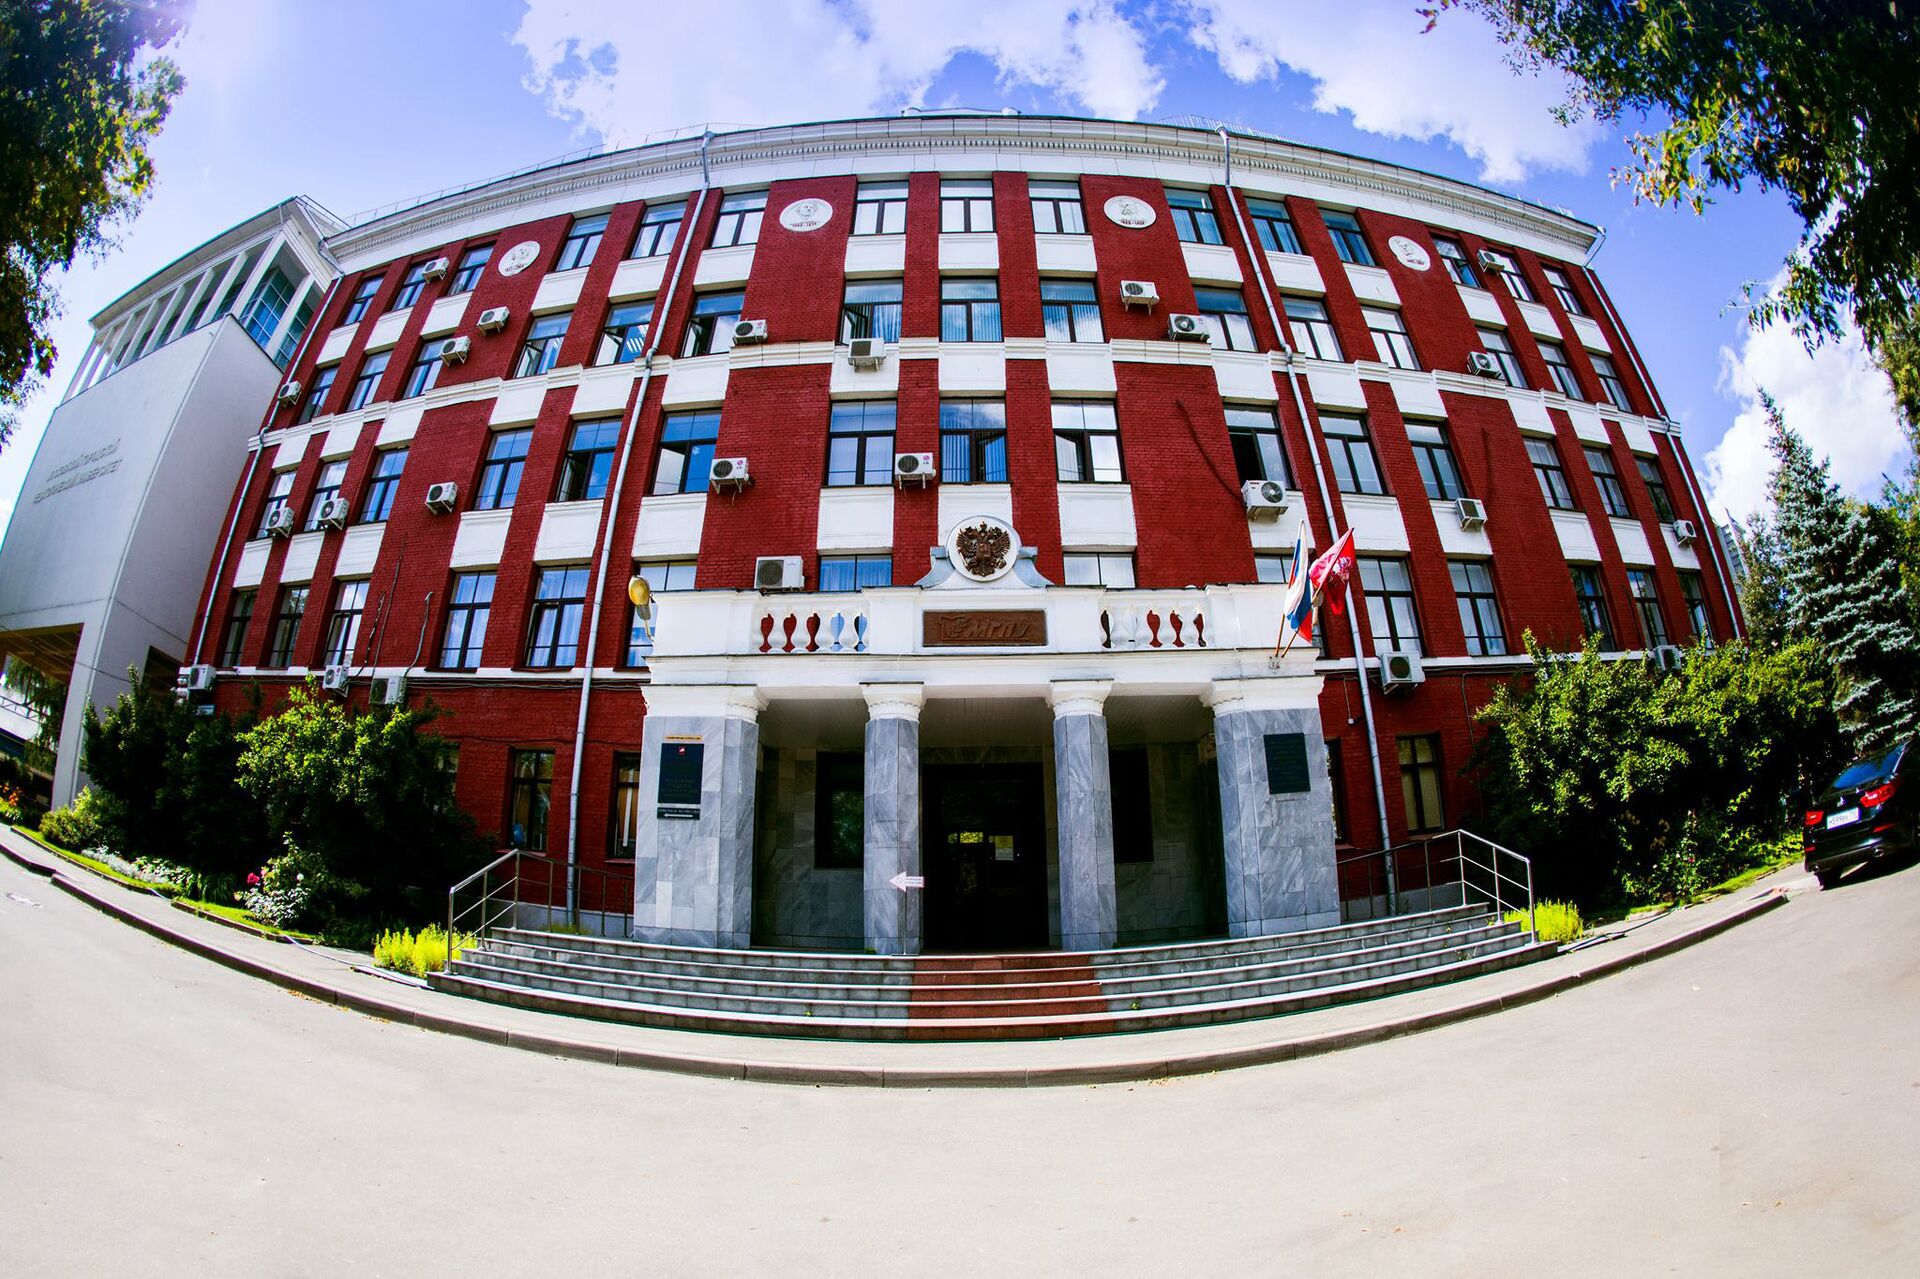 московский педагогический университет фото